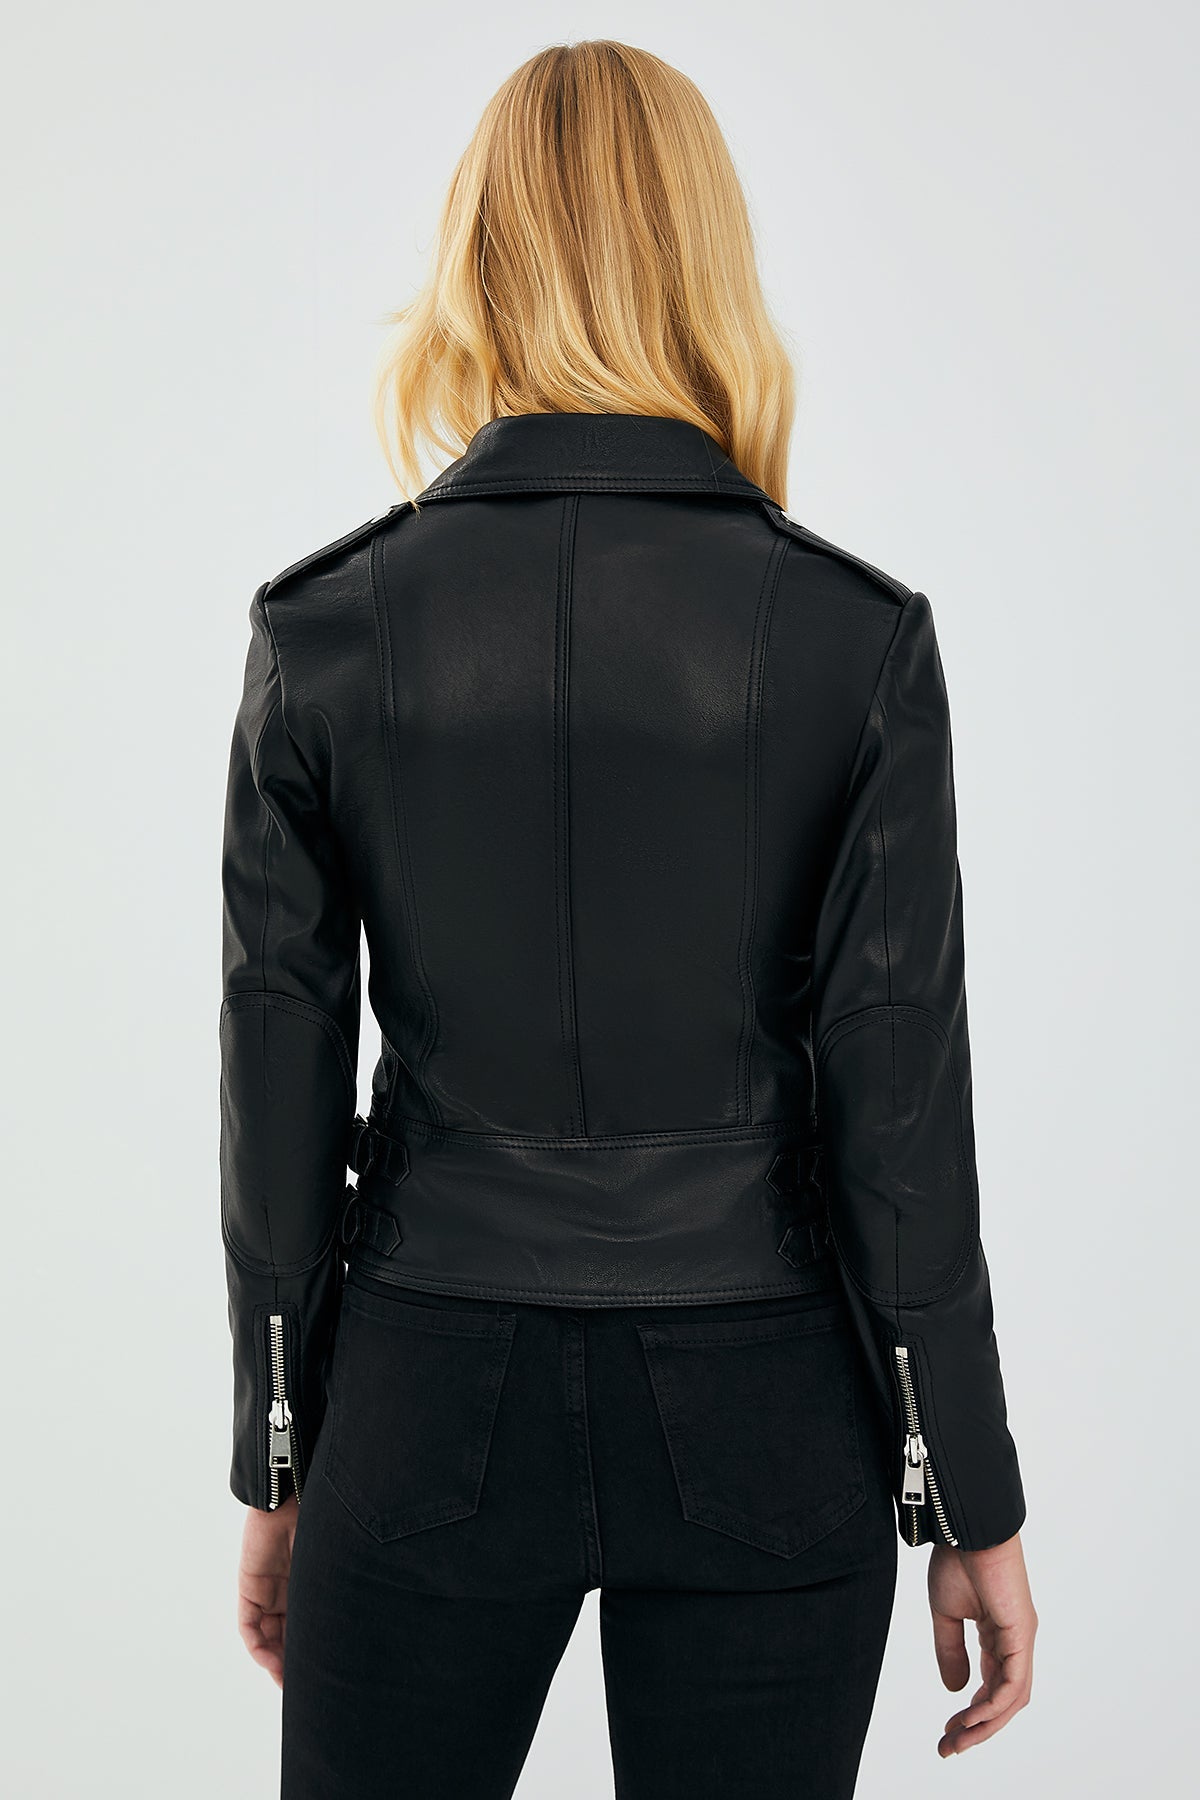 Latoya Women's Black Biker Leather Jacket